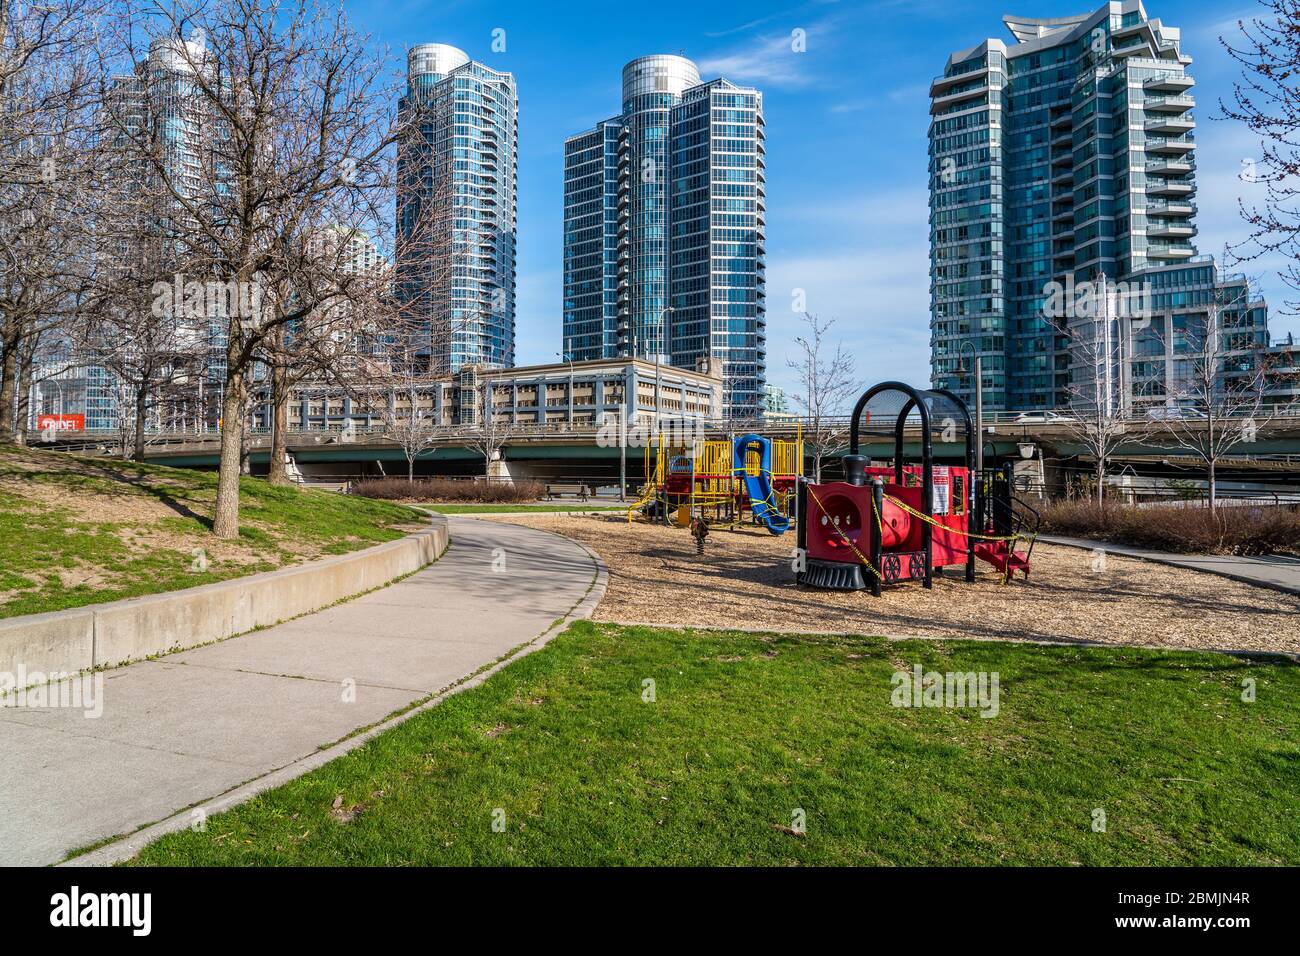 Parque infantil cerrado en el parque vacío del centro de Toronto durante la pandemia de Coronavirus, Ontario, Canadá. Foto de stock